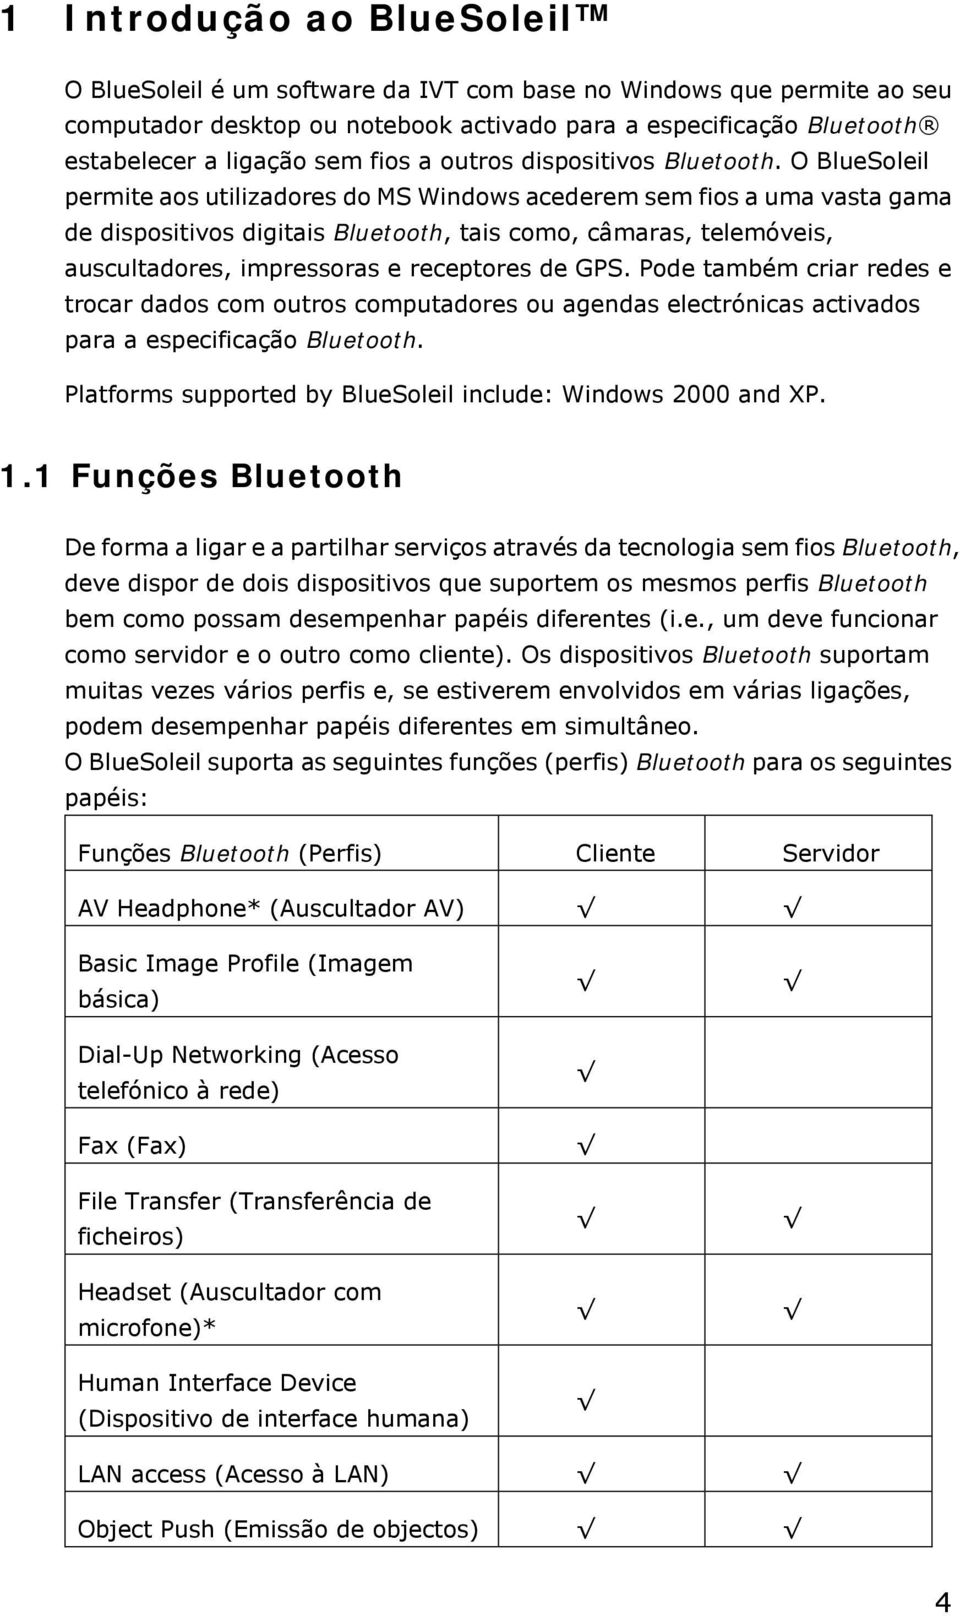 O BlueSoleil permite aos utilizadores do MS Windows acederem sem fios a uma vasta gama de dispositivos digitais Bluetooth, tais como, câmaras, telemóveis, auscultadores, impressoras e receptores de